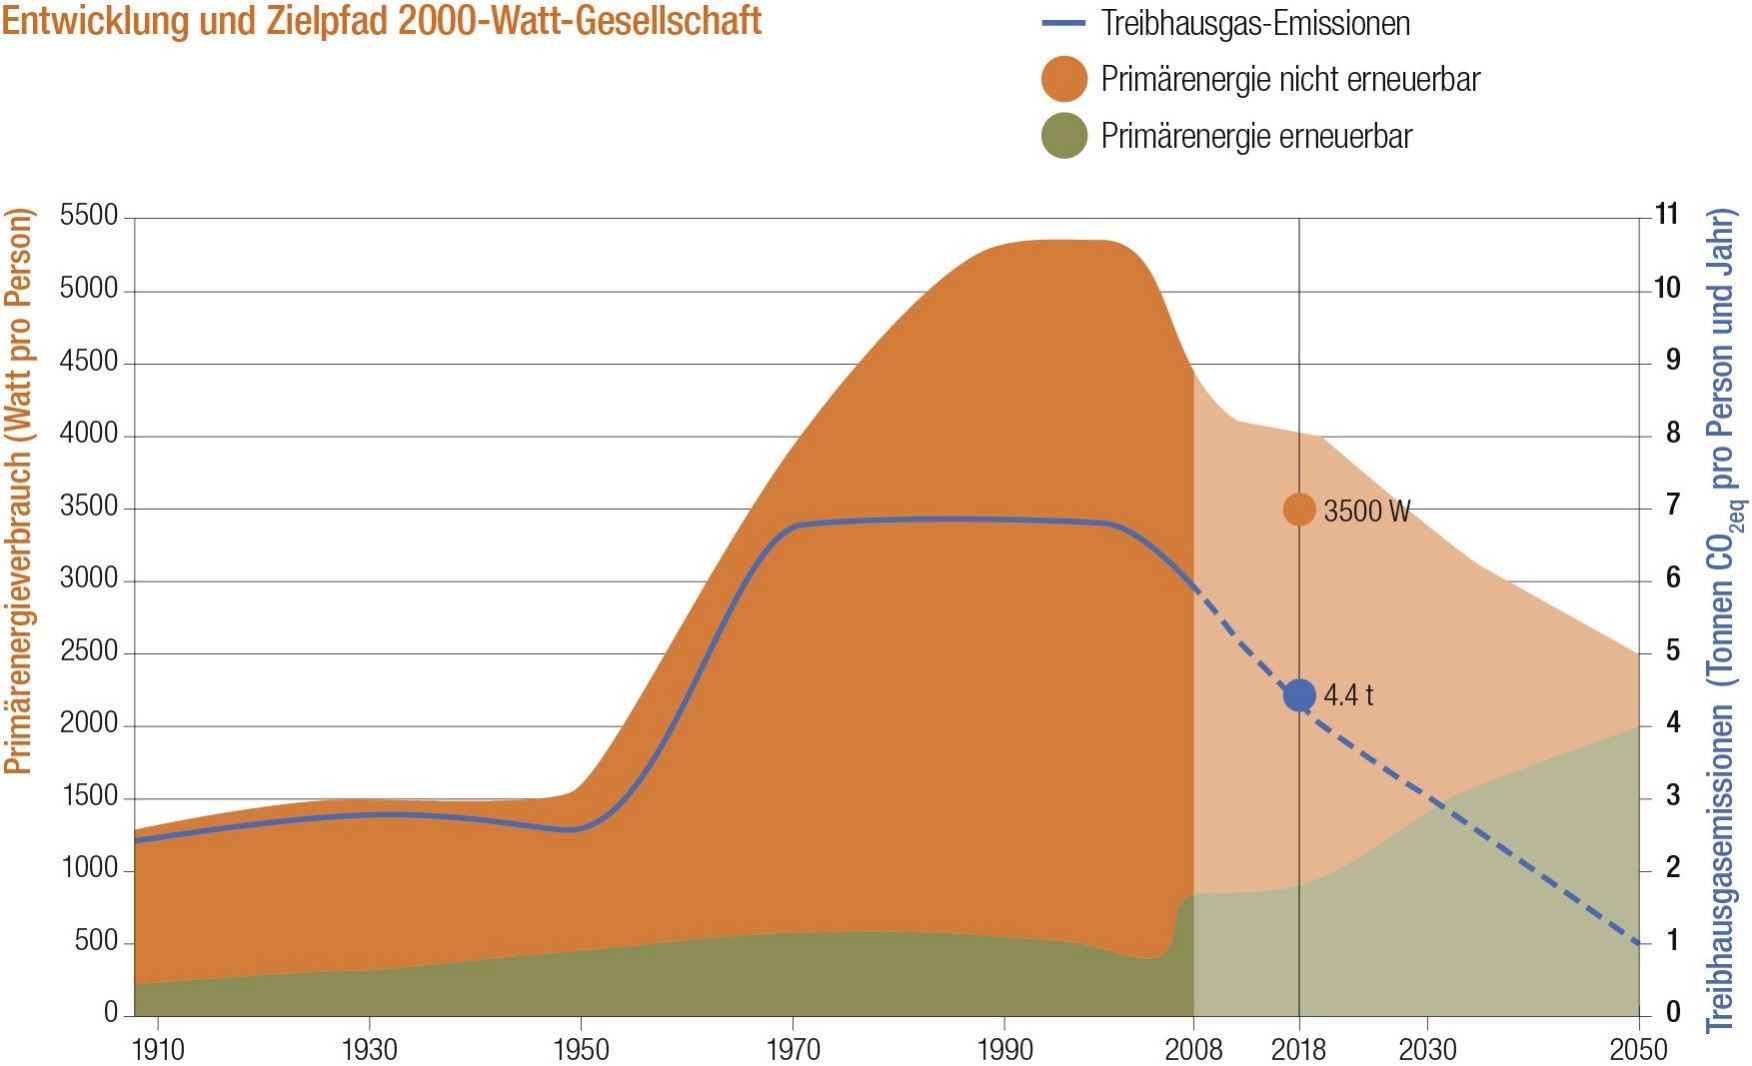 Grafik Entwicklung und Zielpfad 2000-Watt-Gesellschaft